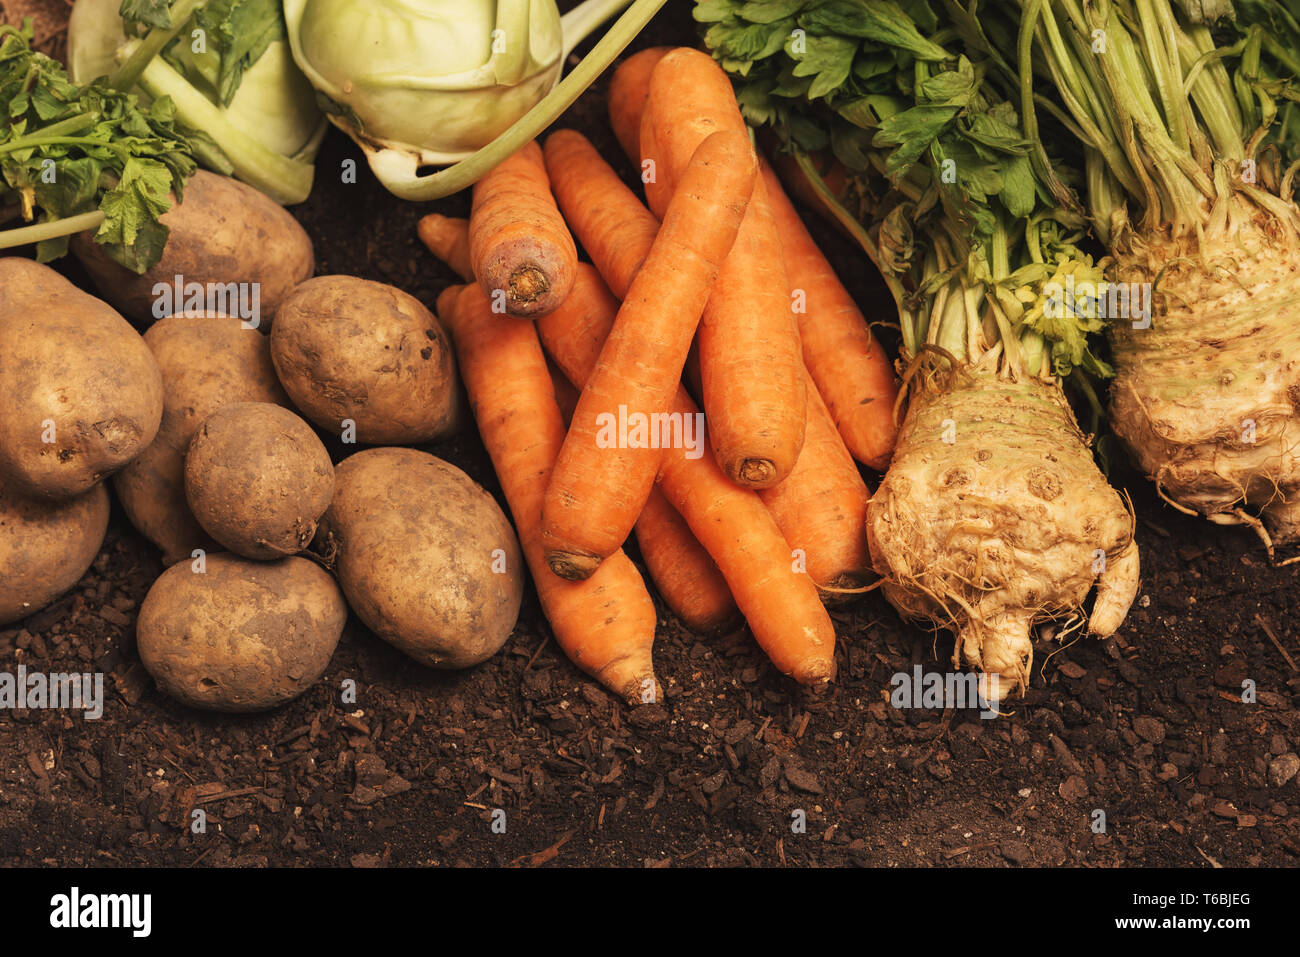 Organische homegrown produzieren Pile-Knollen der Kartoffel, Karotte, Sellerie und Kohlrabi Gemüse Stockfoto